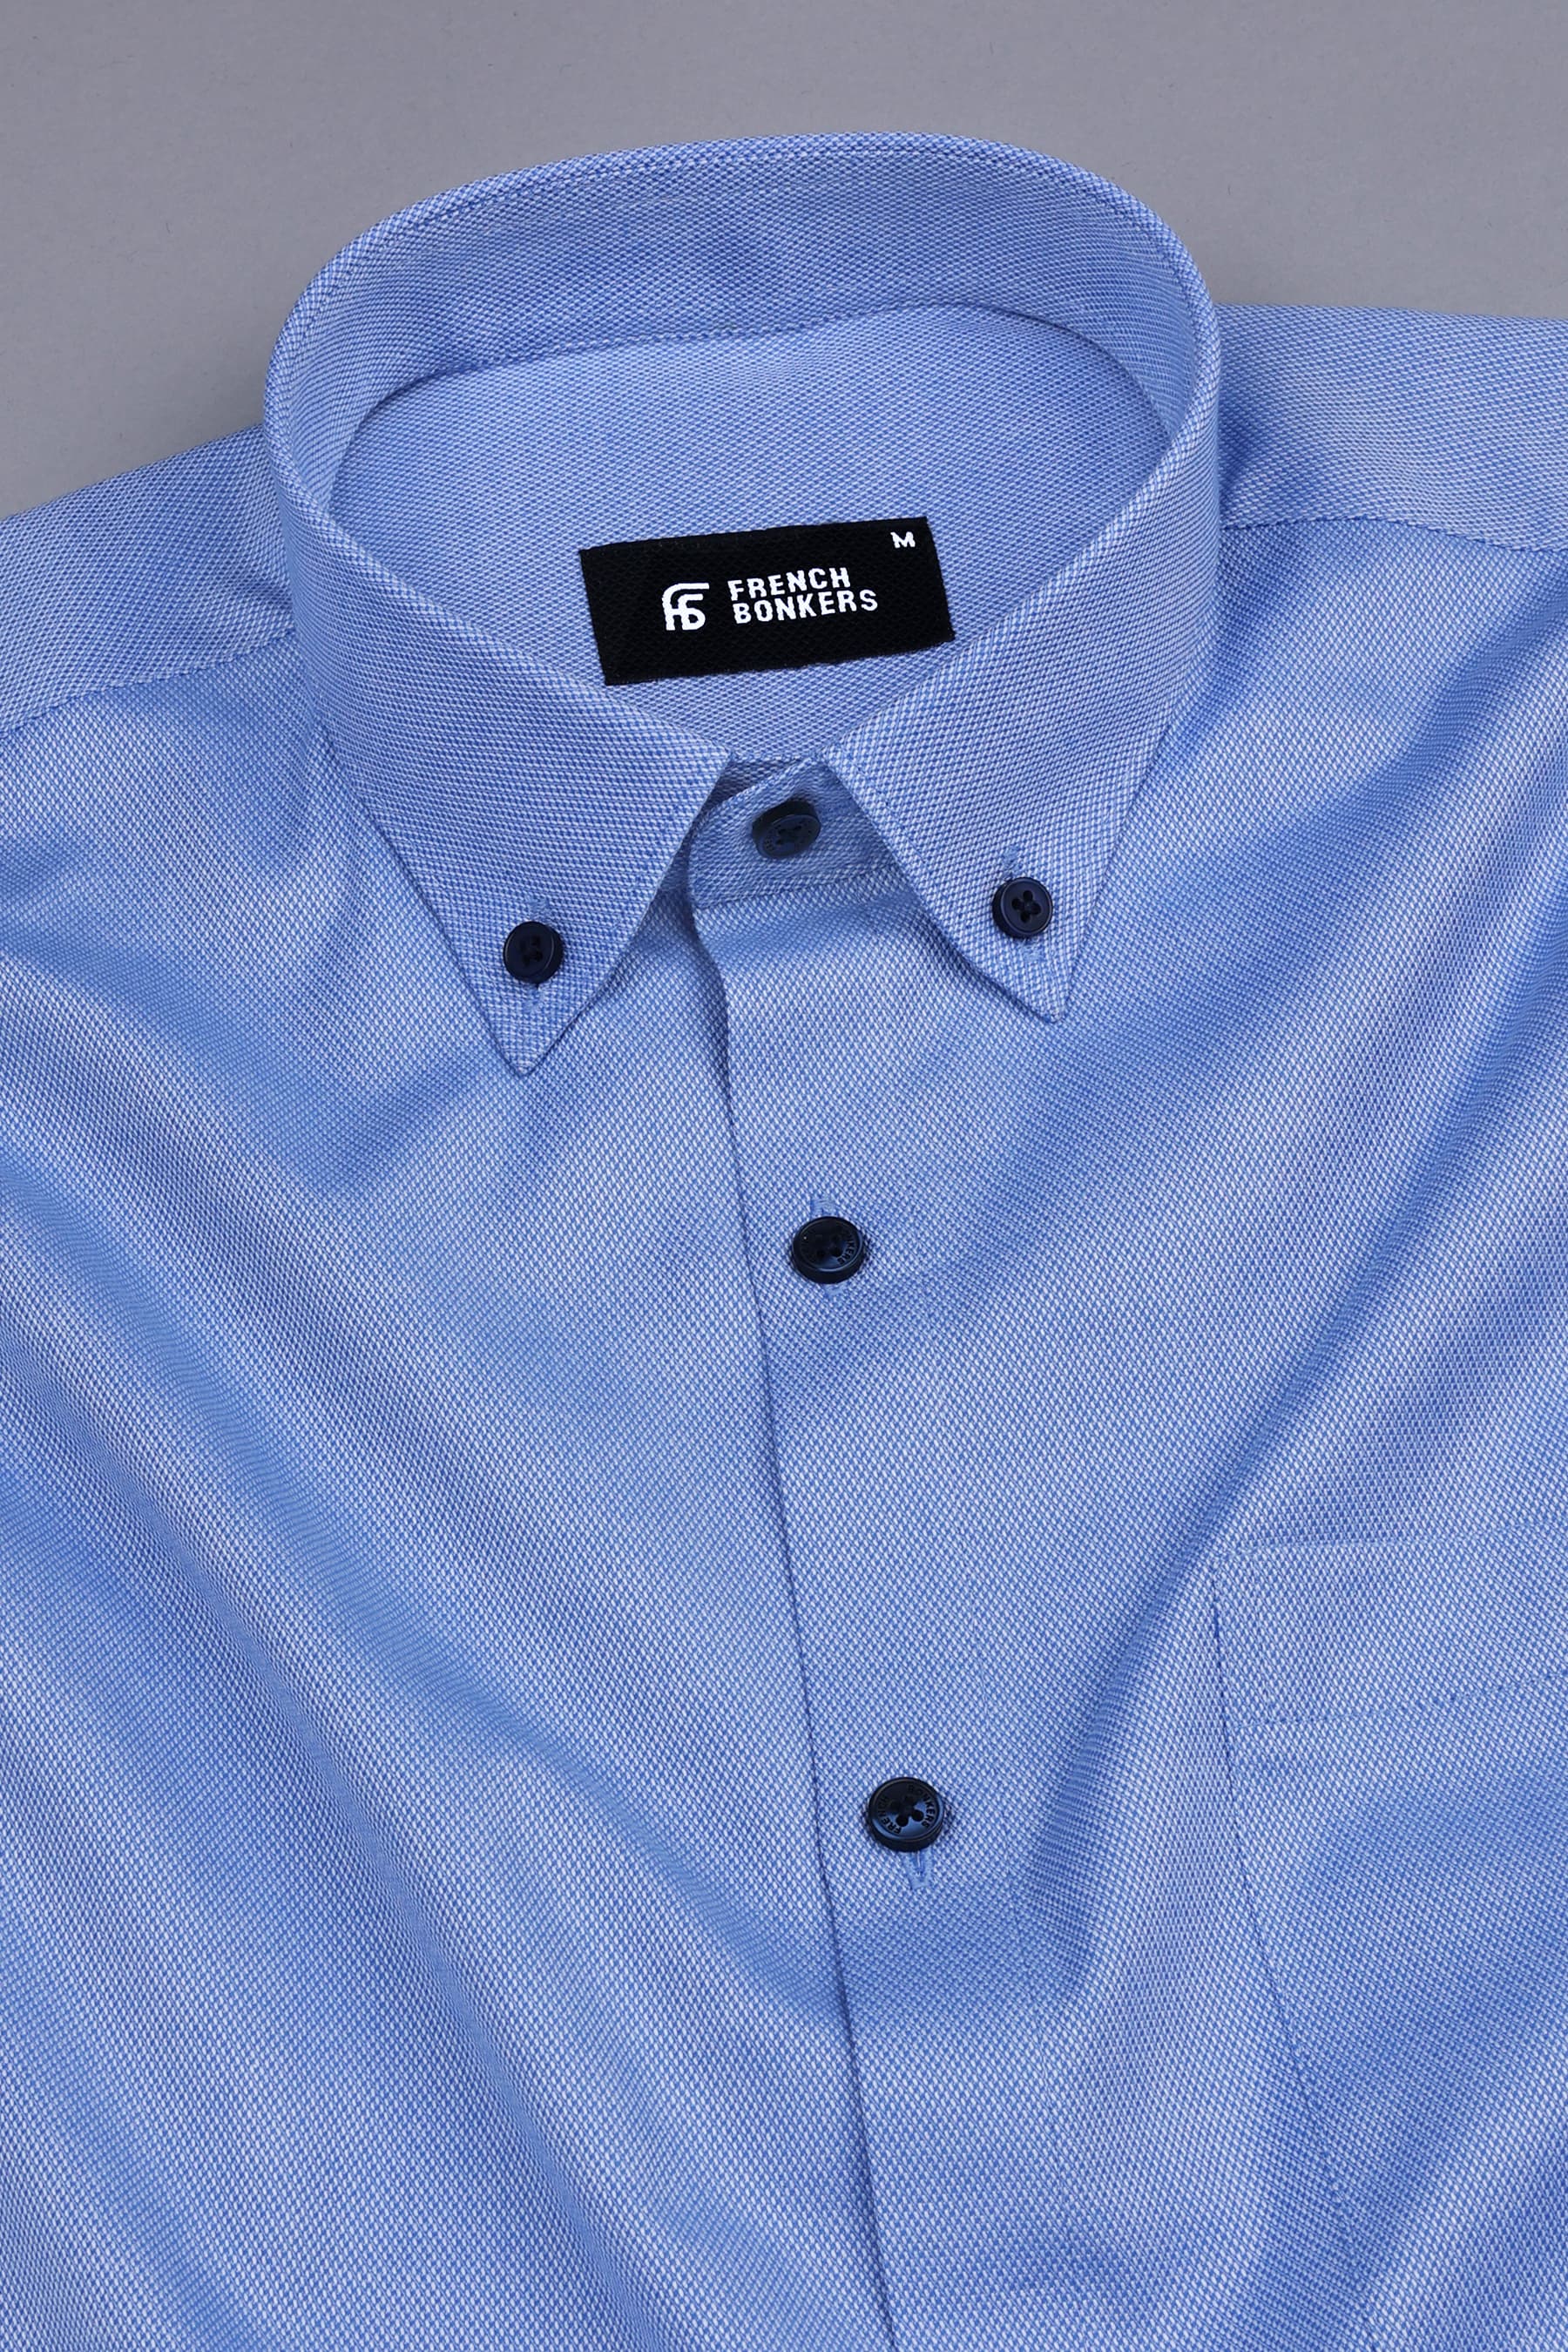 Azure blue dobby texture cotton shirt